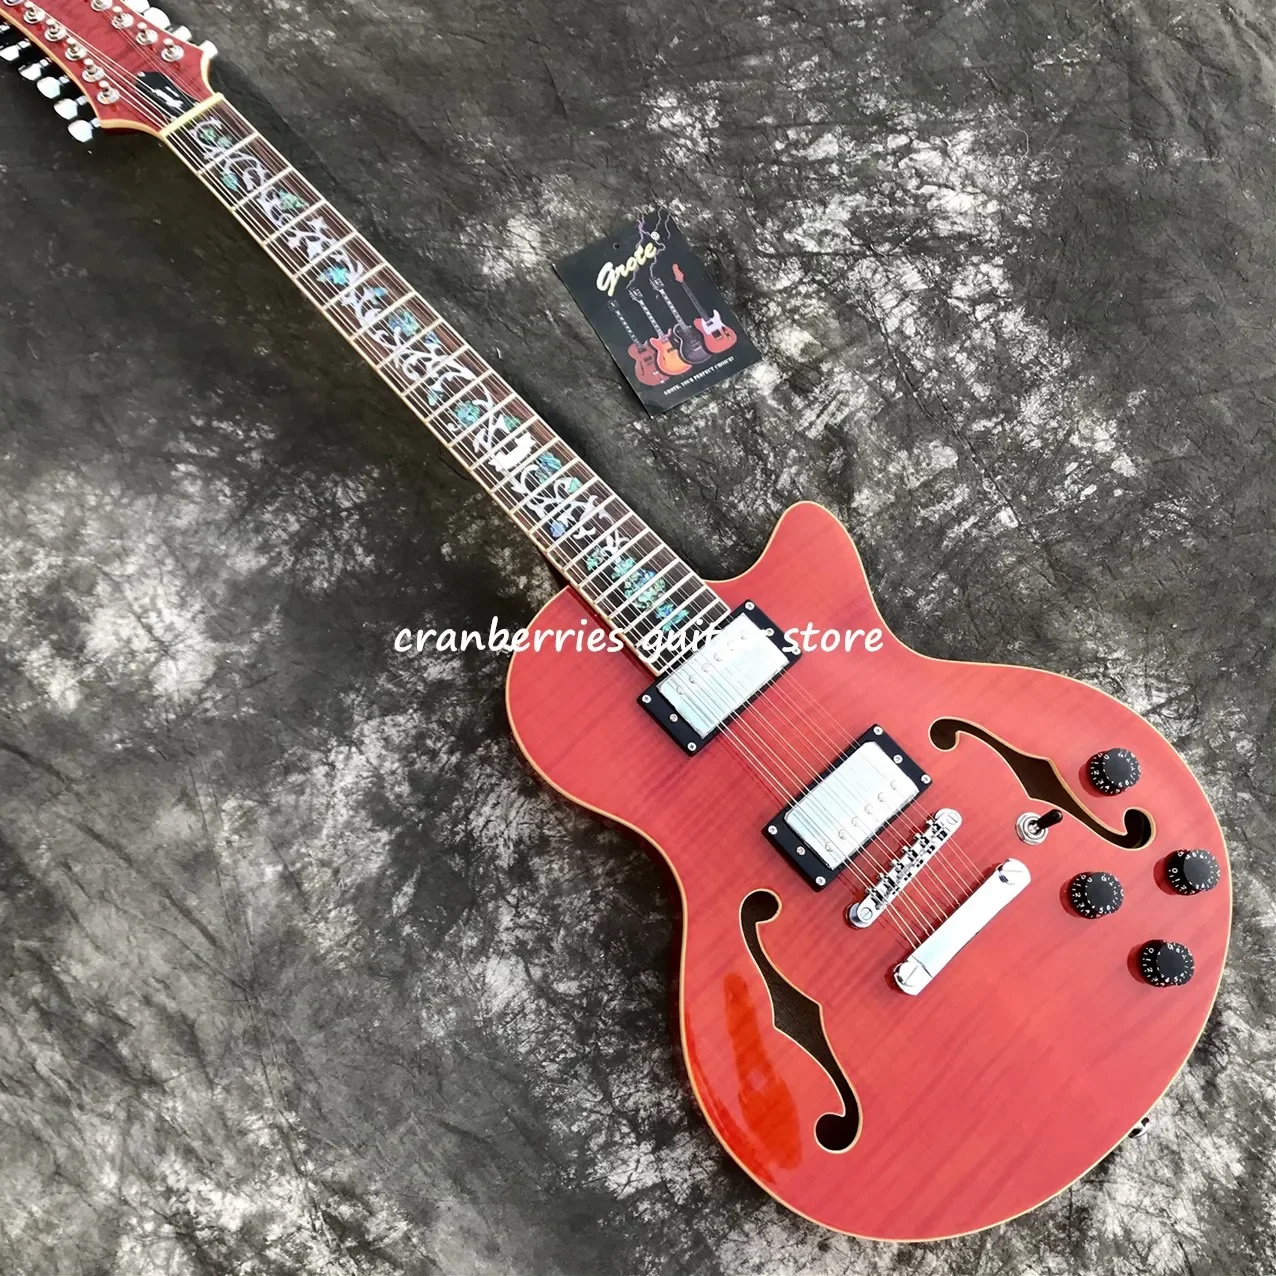 

Новинка 2021, 12 струн, джазовая гитара, Китайская Красная гитара, полый корпус, огненный верх, подставка из розового дерева, бесплатная доставка